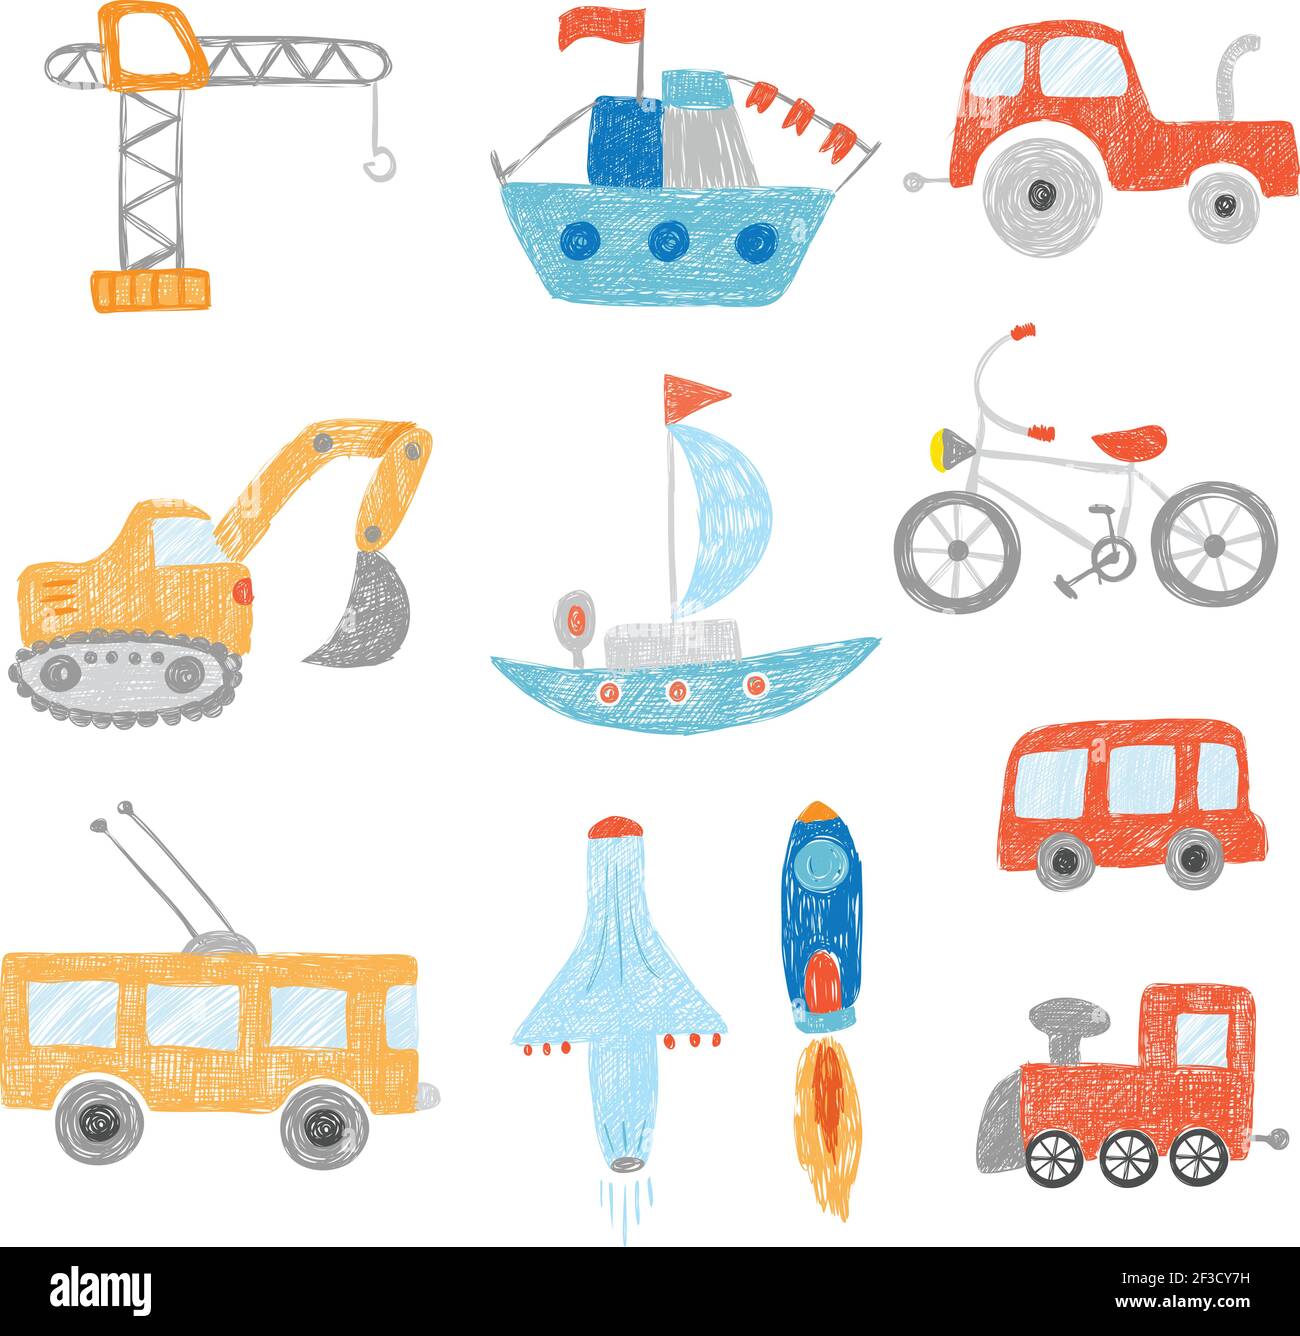 Kinderzeichnung. Kinder Malerei Transport Autos Traktoren Schiff Flugzeug Spielzeug Doodle Vektor Hand gezeichnet Sammlung Stock Vektor